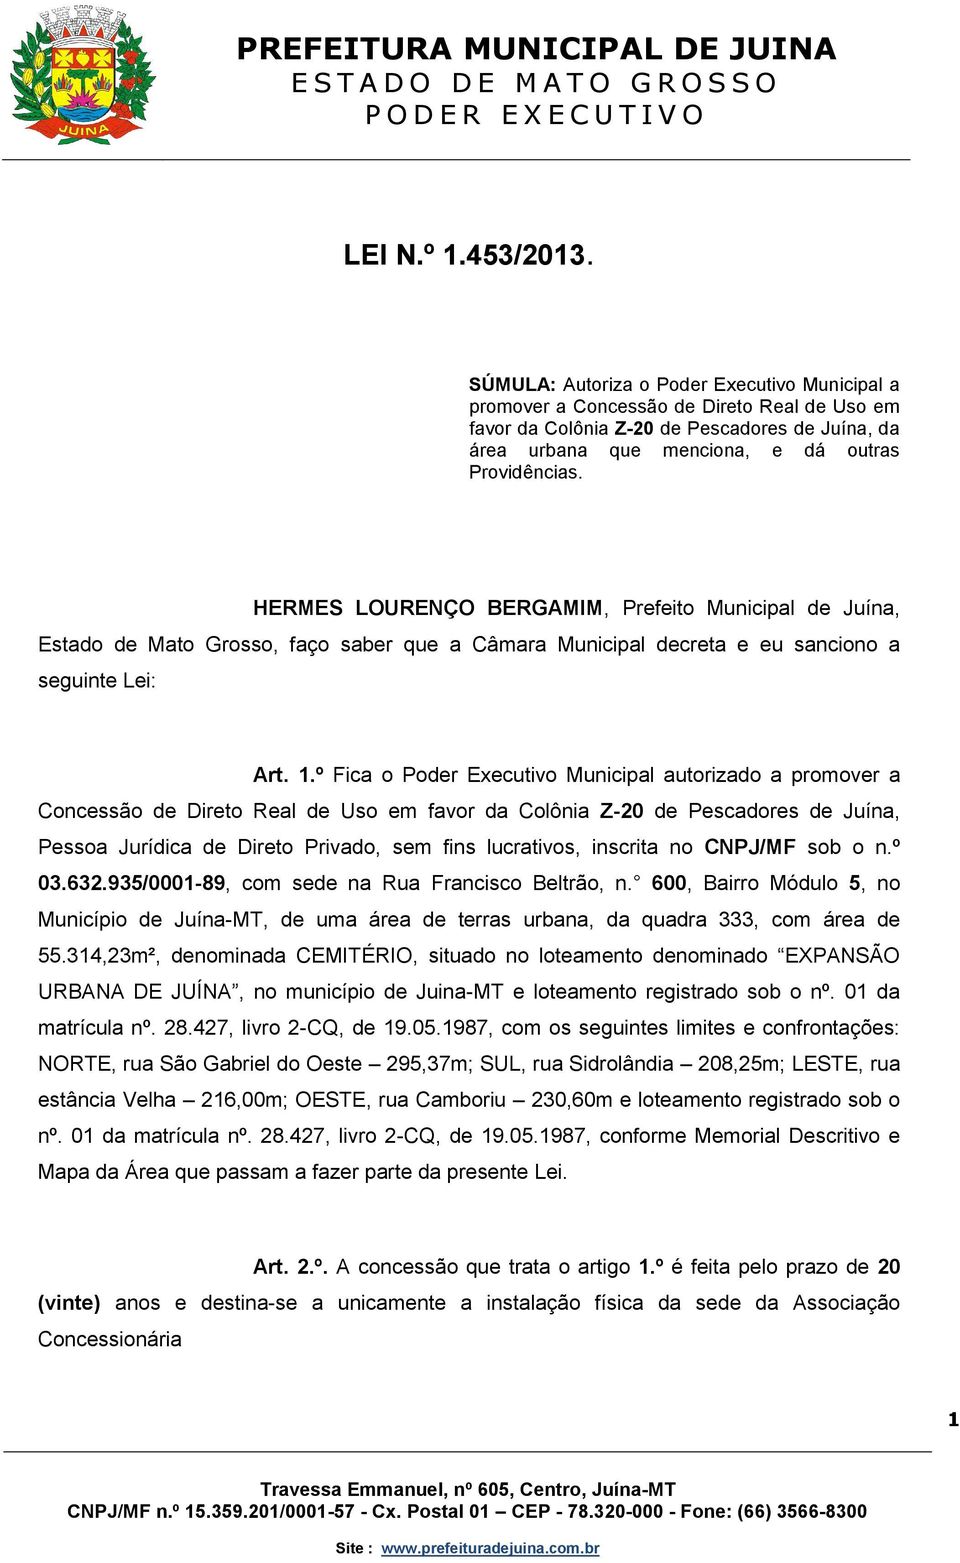 HERMES LOURENÇO BERGAMIM, Prefeito Municipal de Juína, Estado de Mato Grosso, faço saber que a Câmara Municipal decreta e eu sanciono a seguinte Lei: Art. 1.